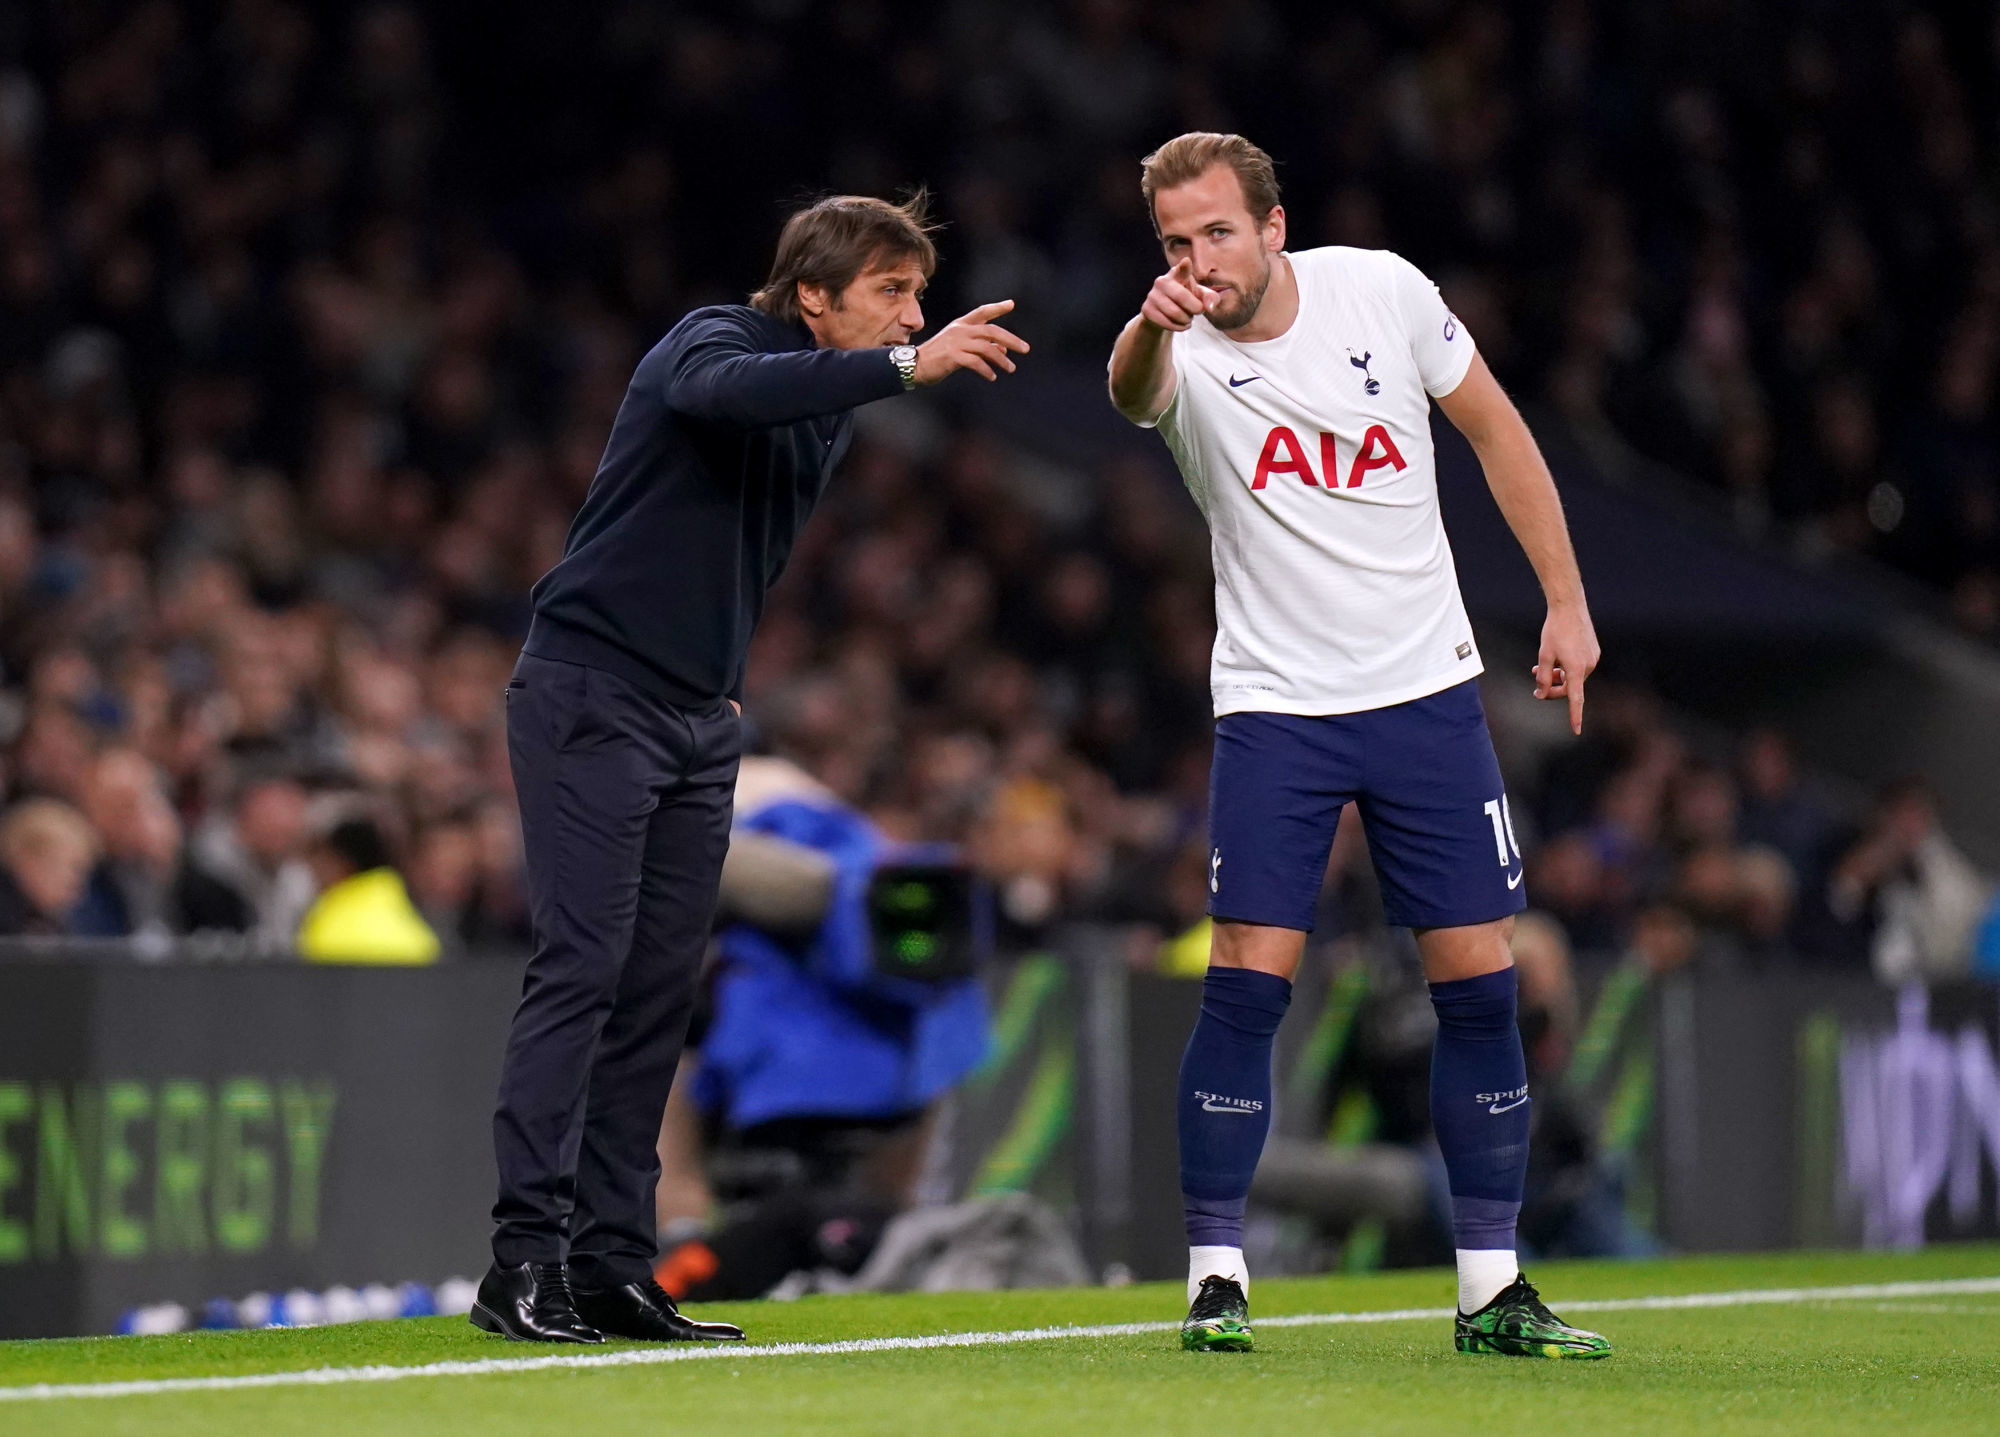 Harry Kane a toute la confiance d'Antonio Conte, coach de Tottenham. (Icon Sport)